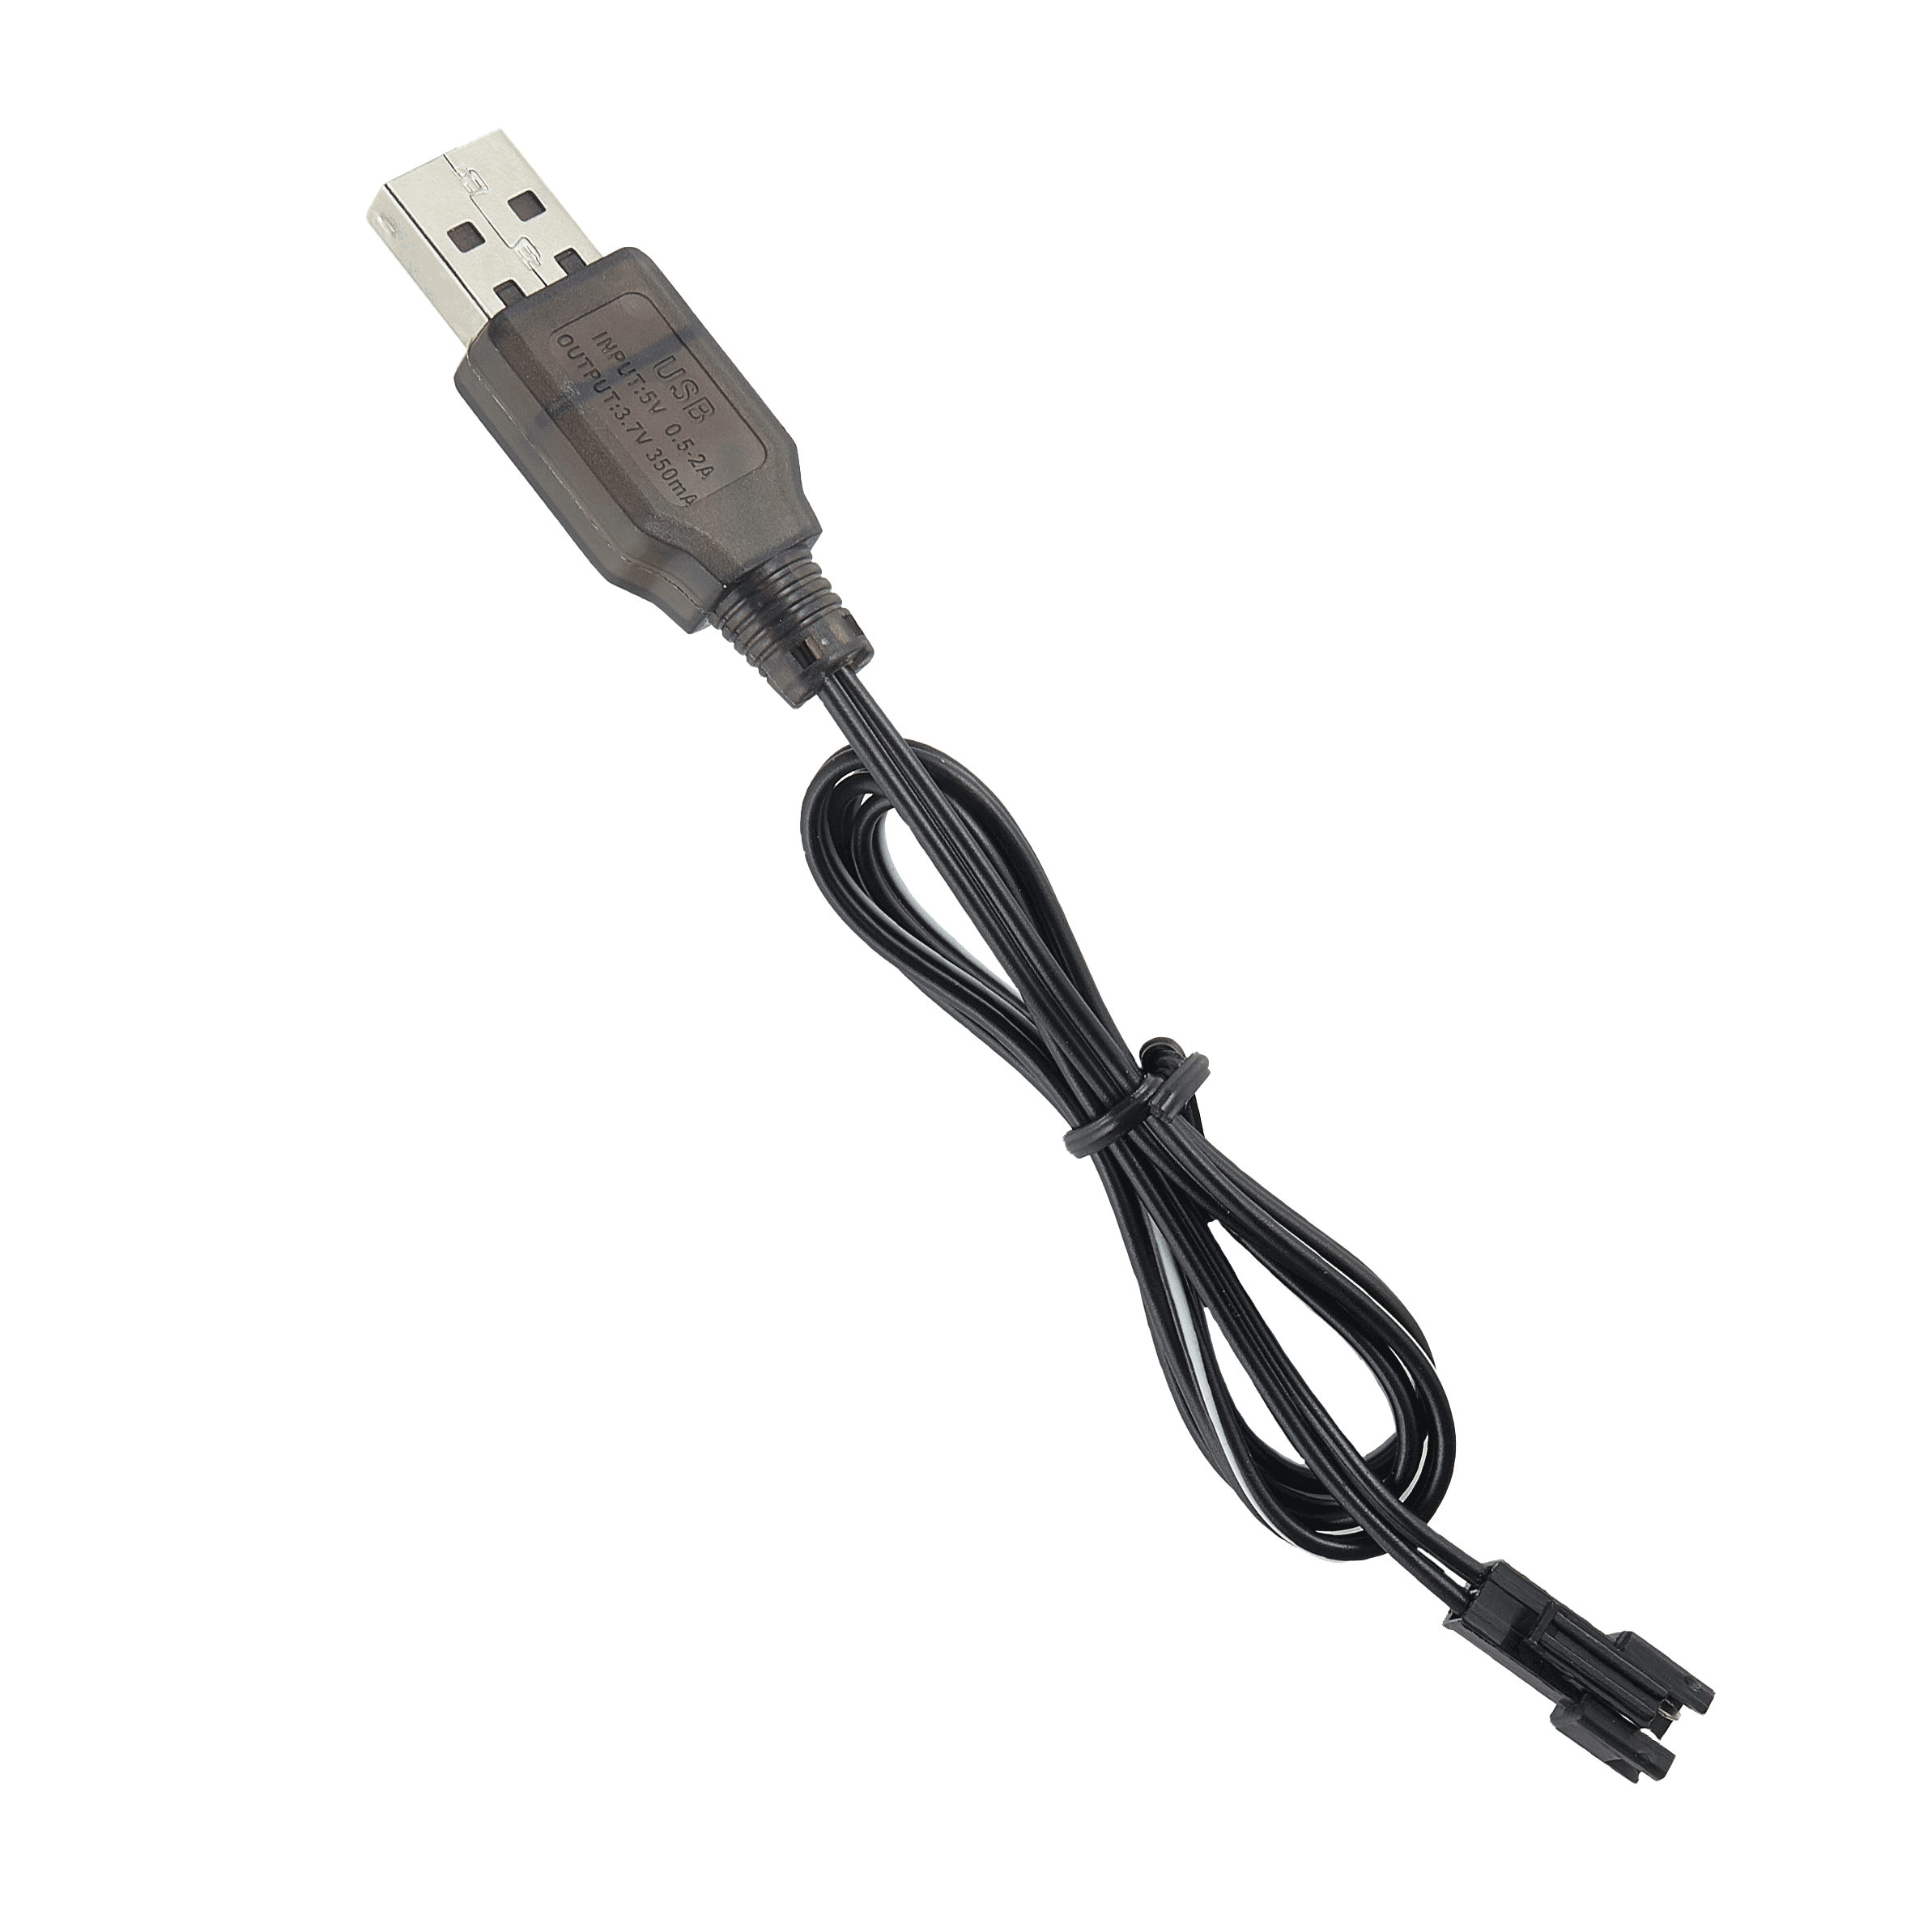 Cyclone LED USB Charger - USA Toyz